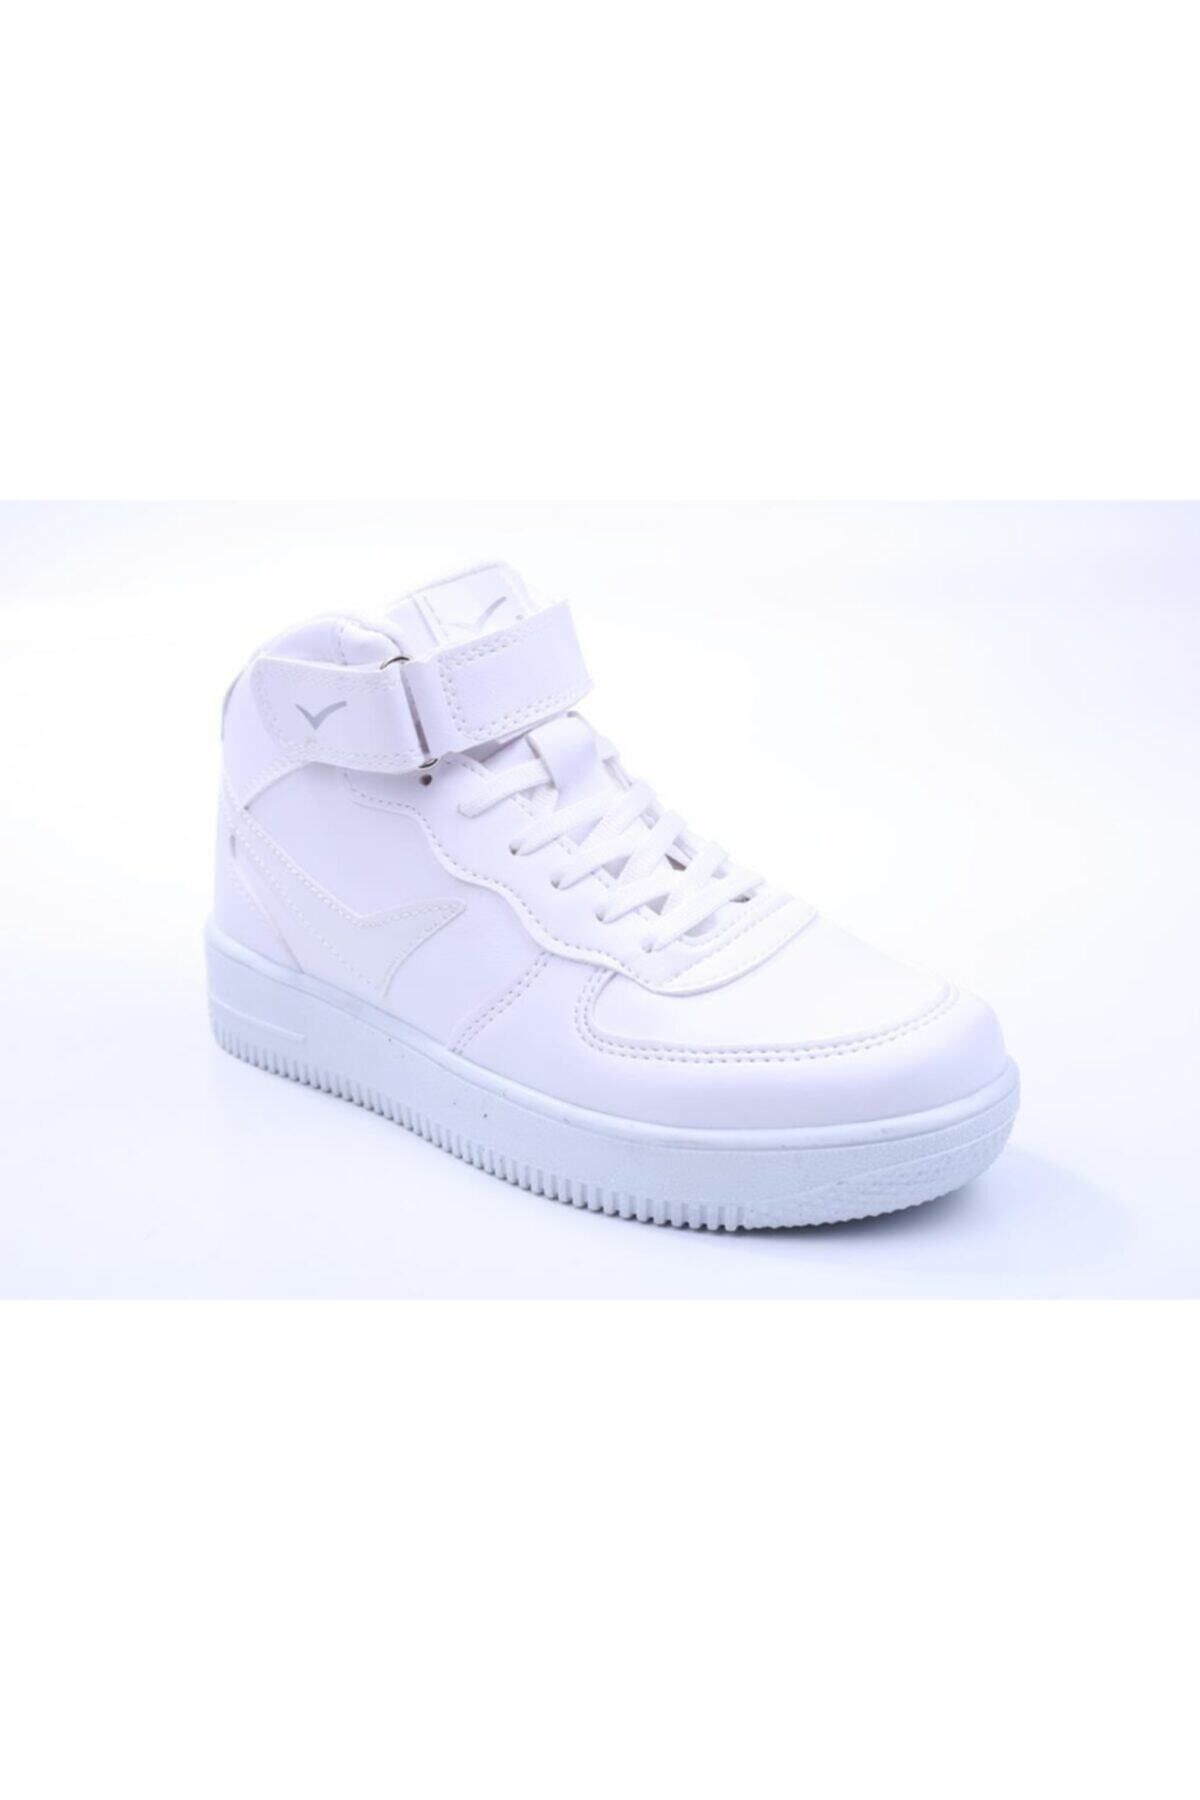 Lambırlent Beyaz - 2185 Unisex (kadın-erkek) Boğazlı Spor Ayakkabı